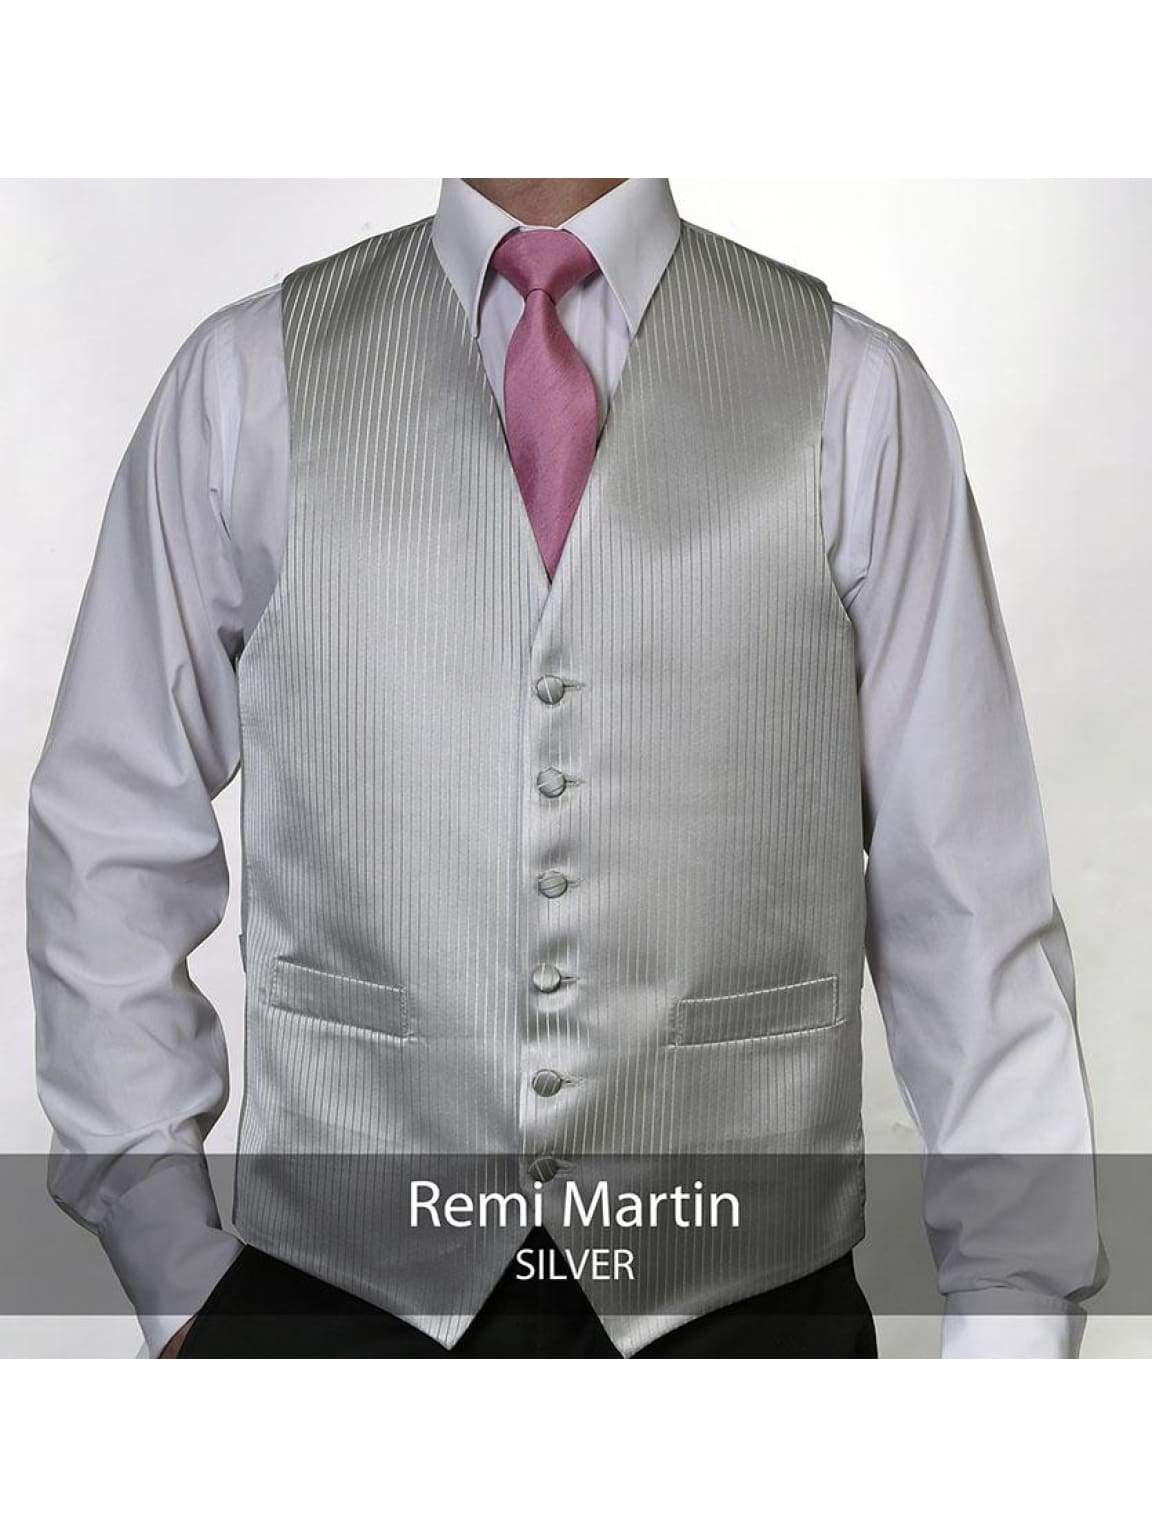 Heirloom Remi Martin Mens Silver Luxury 100% Wool Tweed Waistcoat - 34R - WAISTCOATS